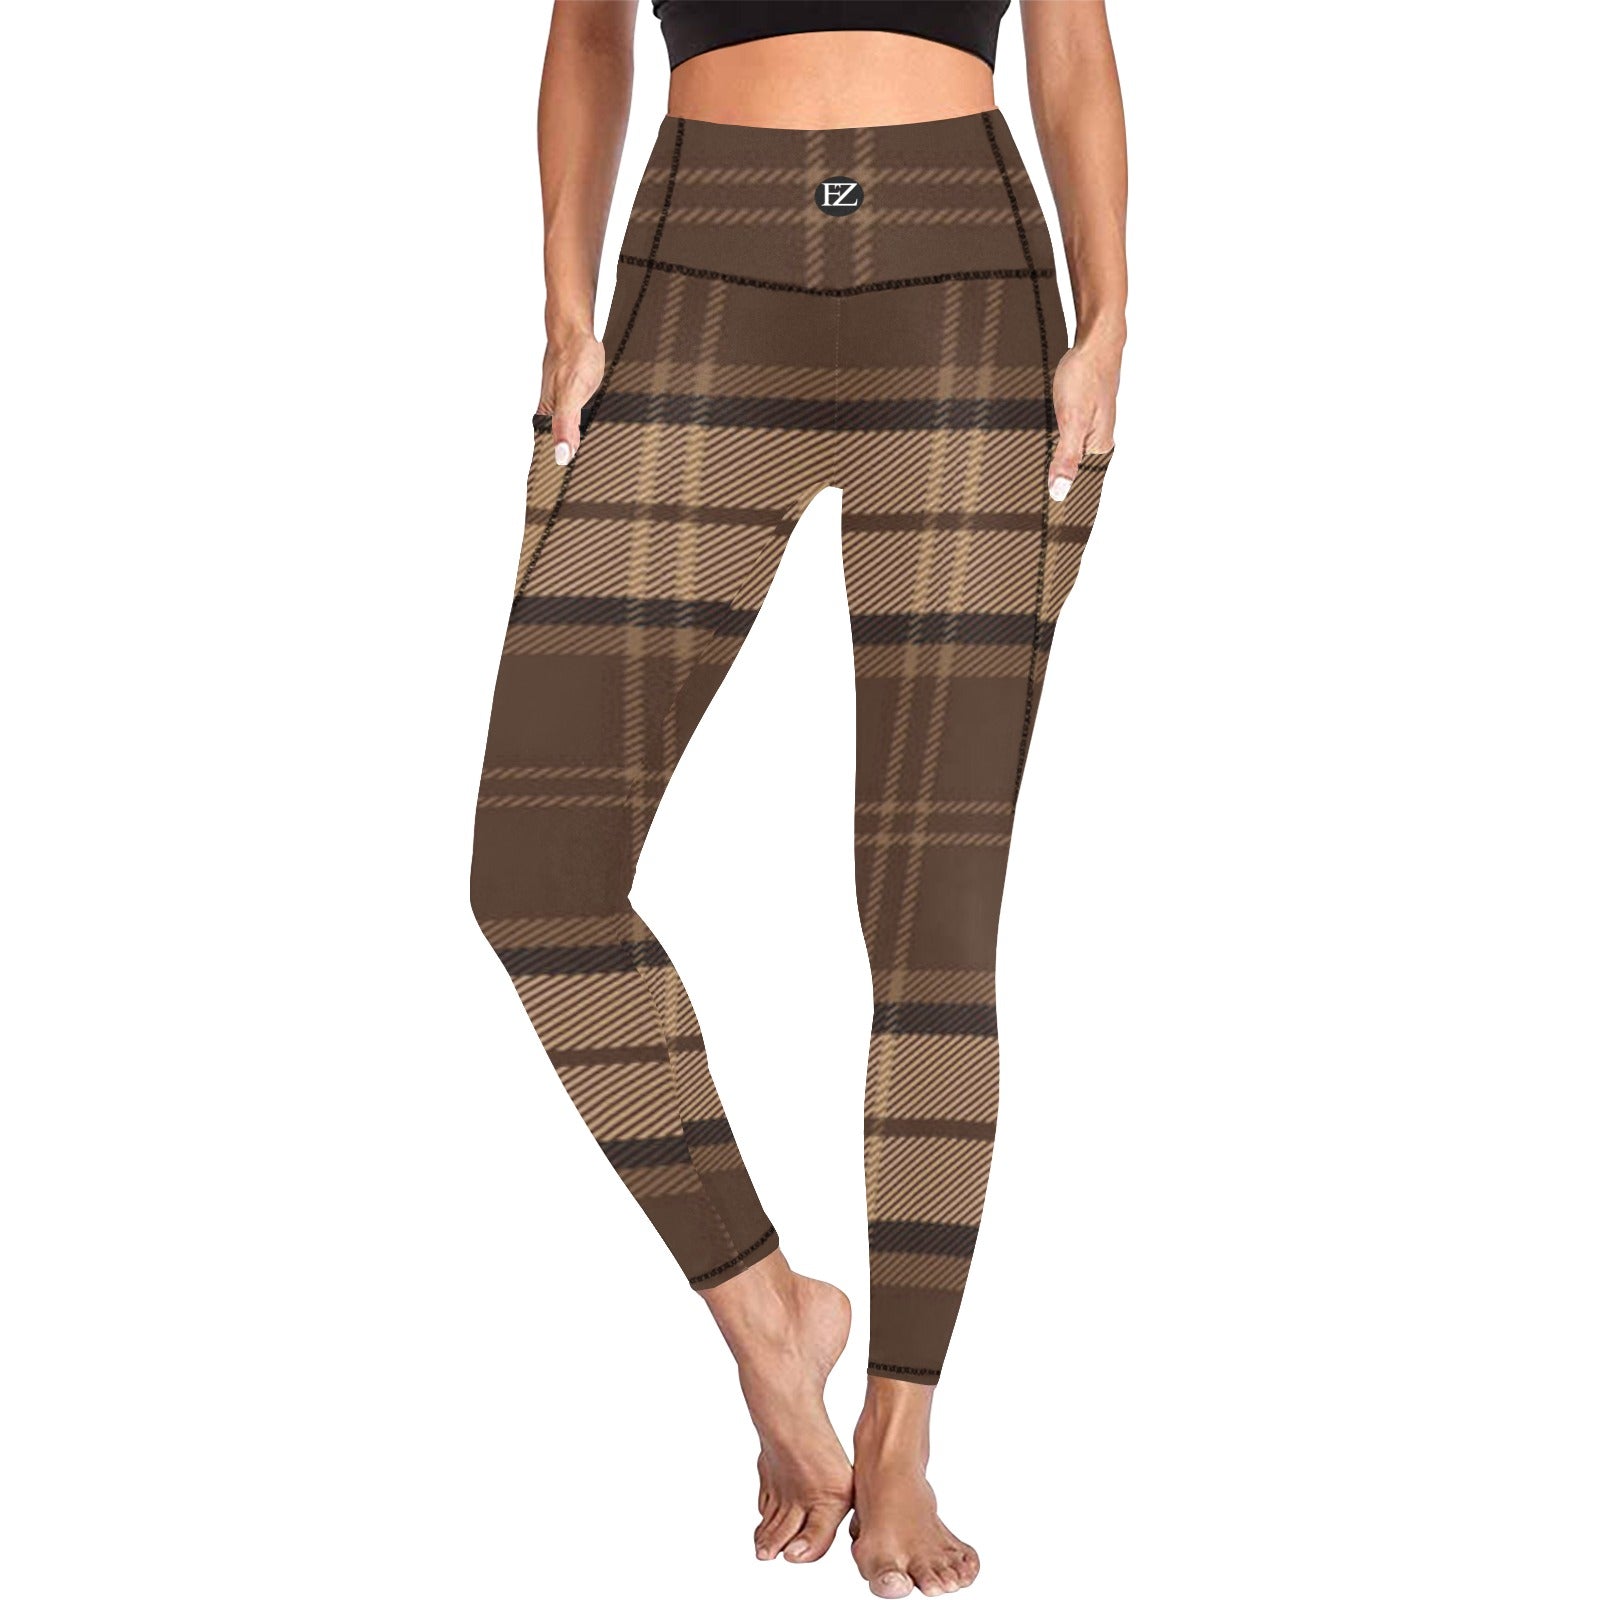 fz women's leggings 4 all over print high waist leggings with pockets (modell56)